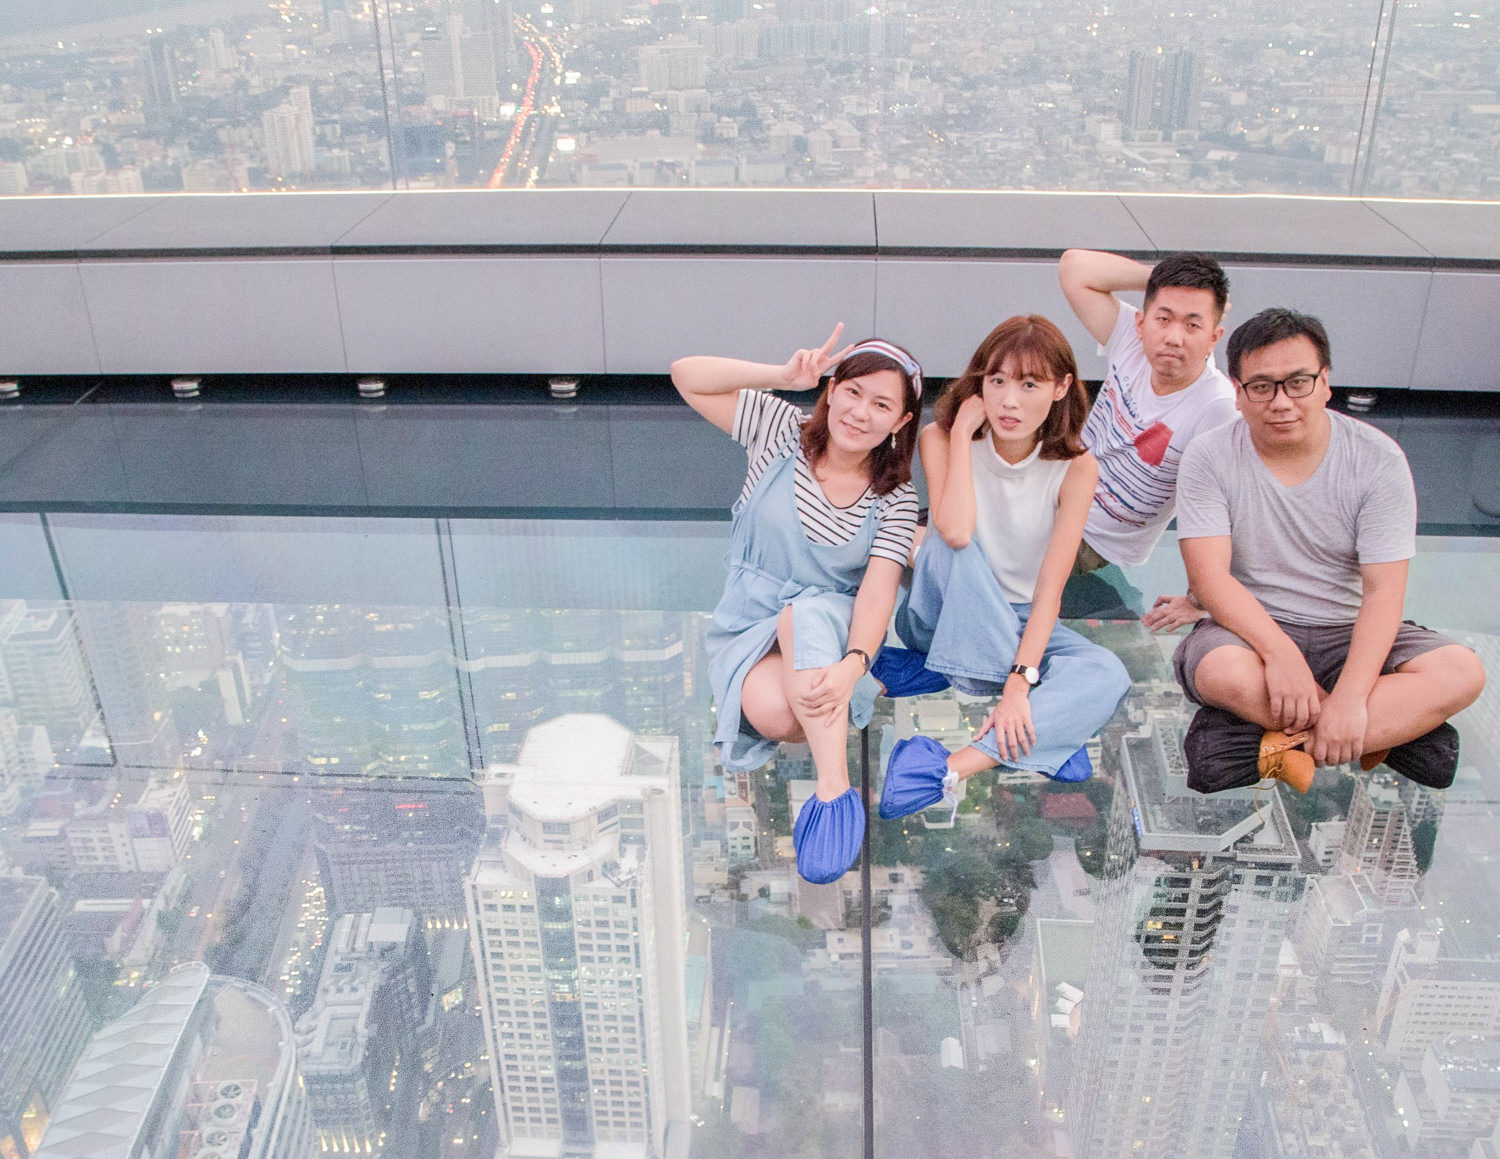 曼谷高空酒吧 Mahanakhon Skywalk 泰國最高大樓78樓高空透明步道